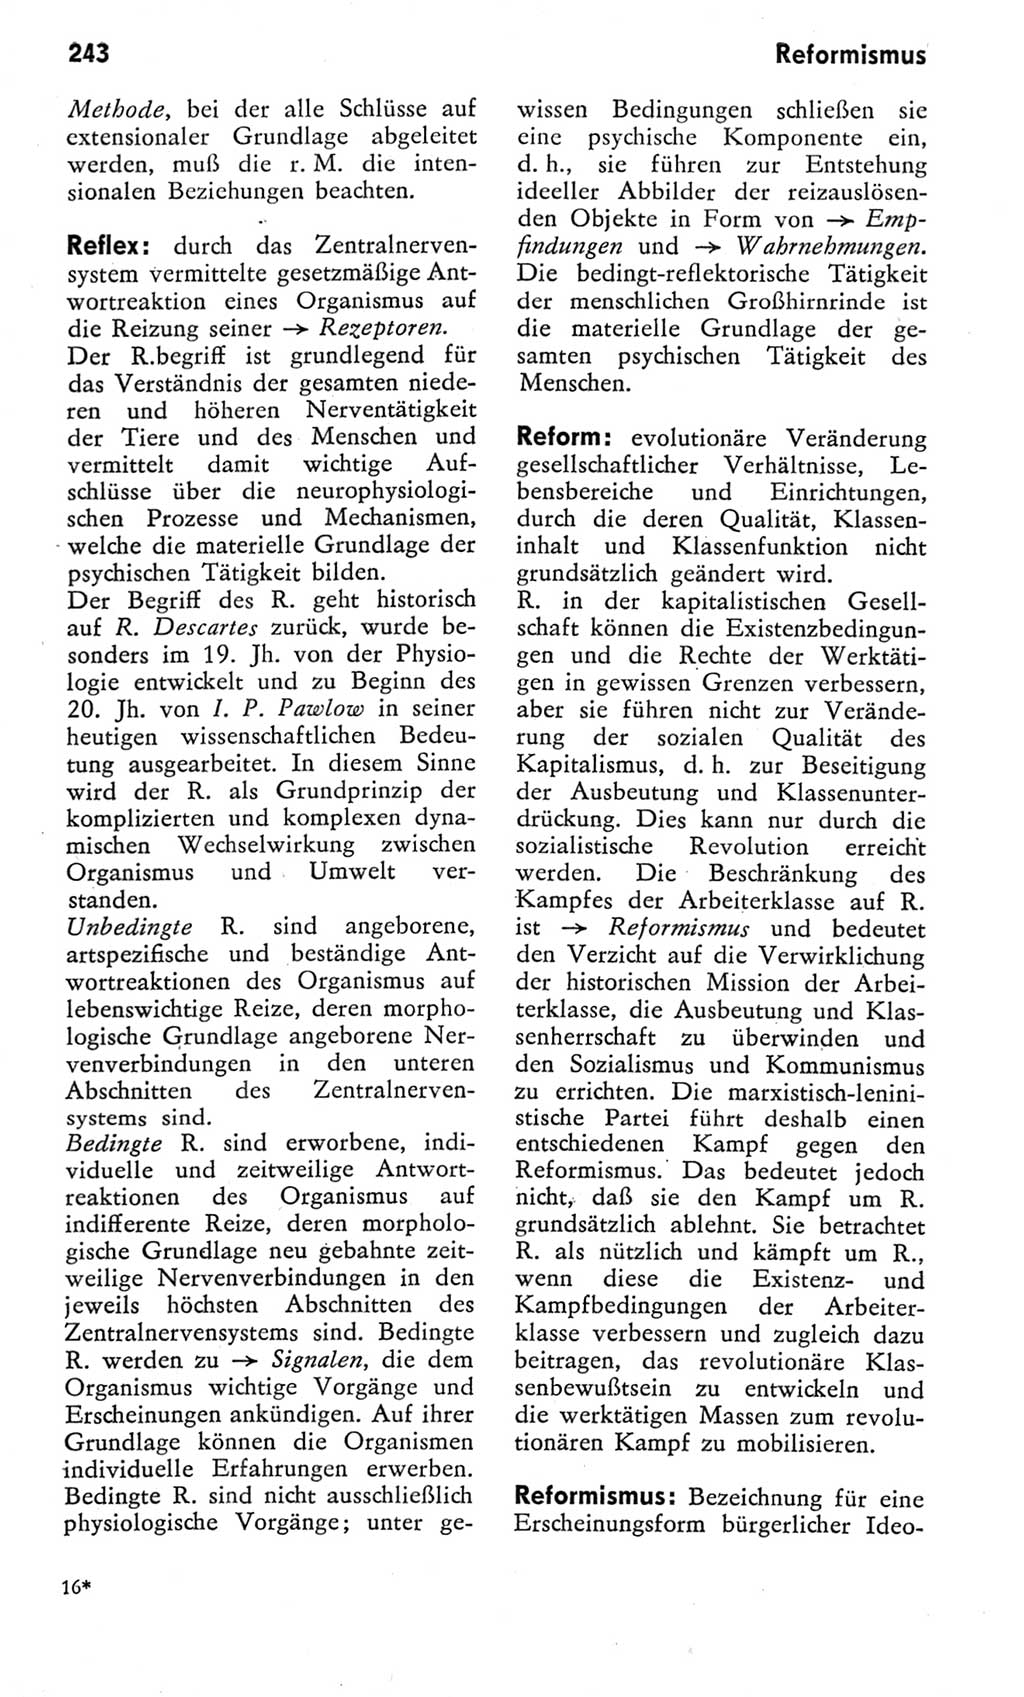 Kleines Wörterbuch der marxistisch-leninistischen Philosophie [Deutsche Demokratische Republik (DDR)] 1975, Seite 243 (Kl. Wb. ML Phil. DDR 1975, S. 243)